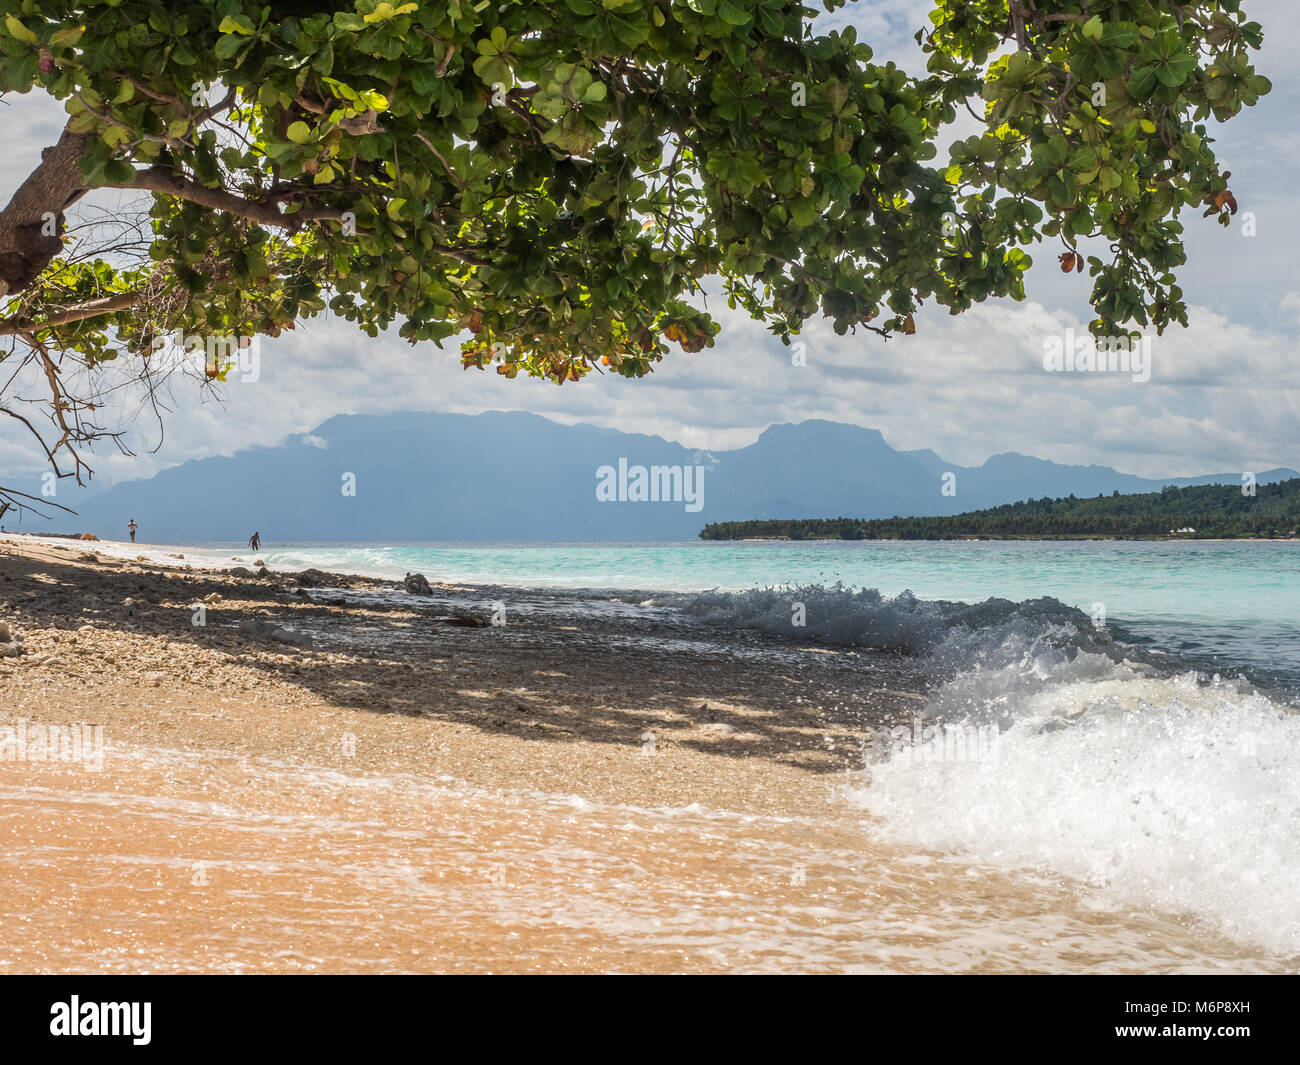 Baum auf der wunderschönen tropischen Strand auf einer der Sieben Inseln, in der Nähe der Insel Seram, Molukken, Indonesien, pelau Sau, Sau'u, Banda See, Asien Stockfoto